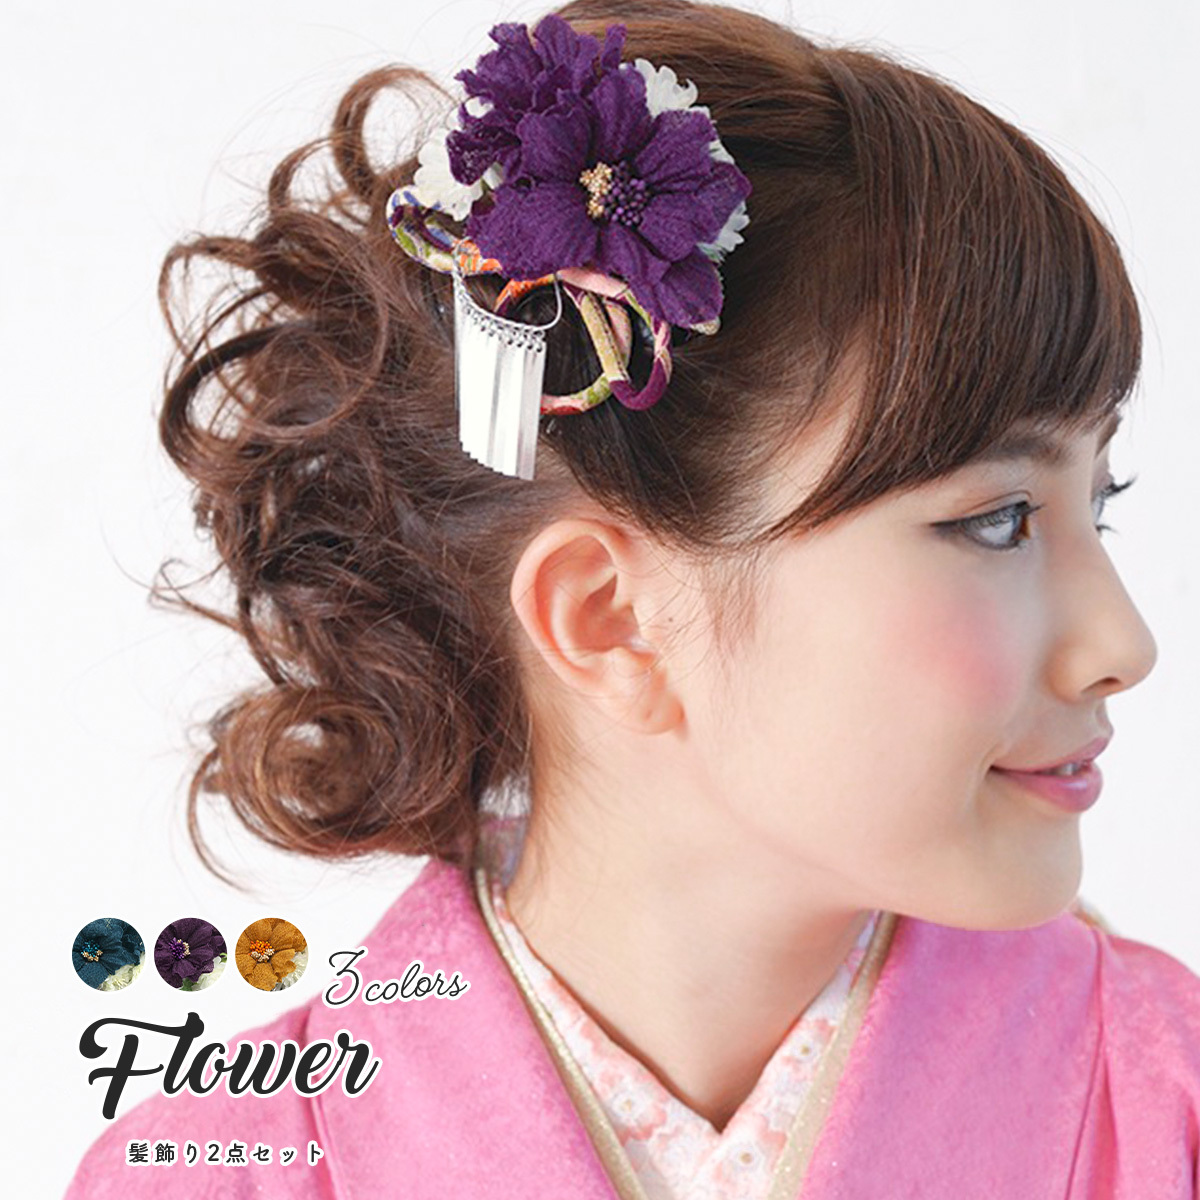 髪飾り 成人式振袖髪飾り 卒業式袴髪飾り 花 フラワー 紫 青 黄色 